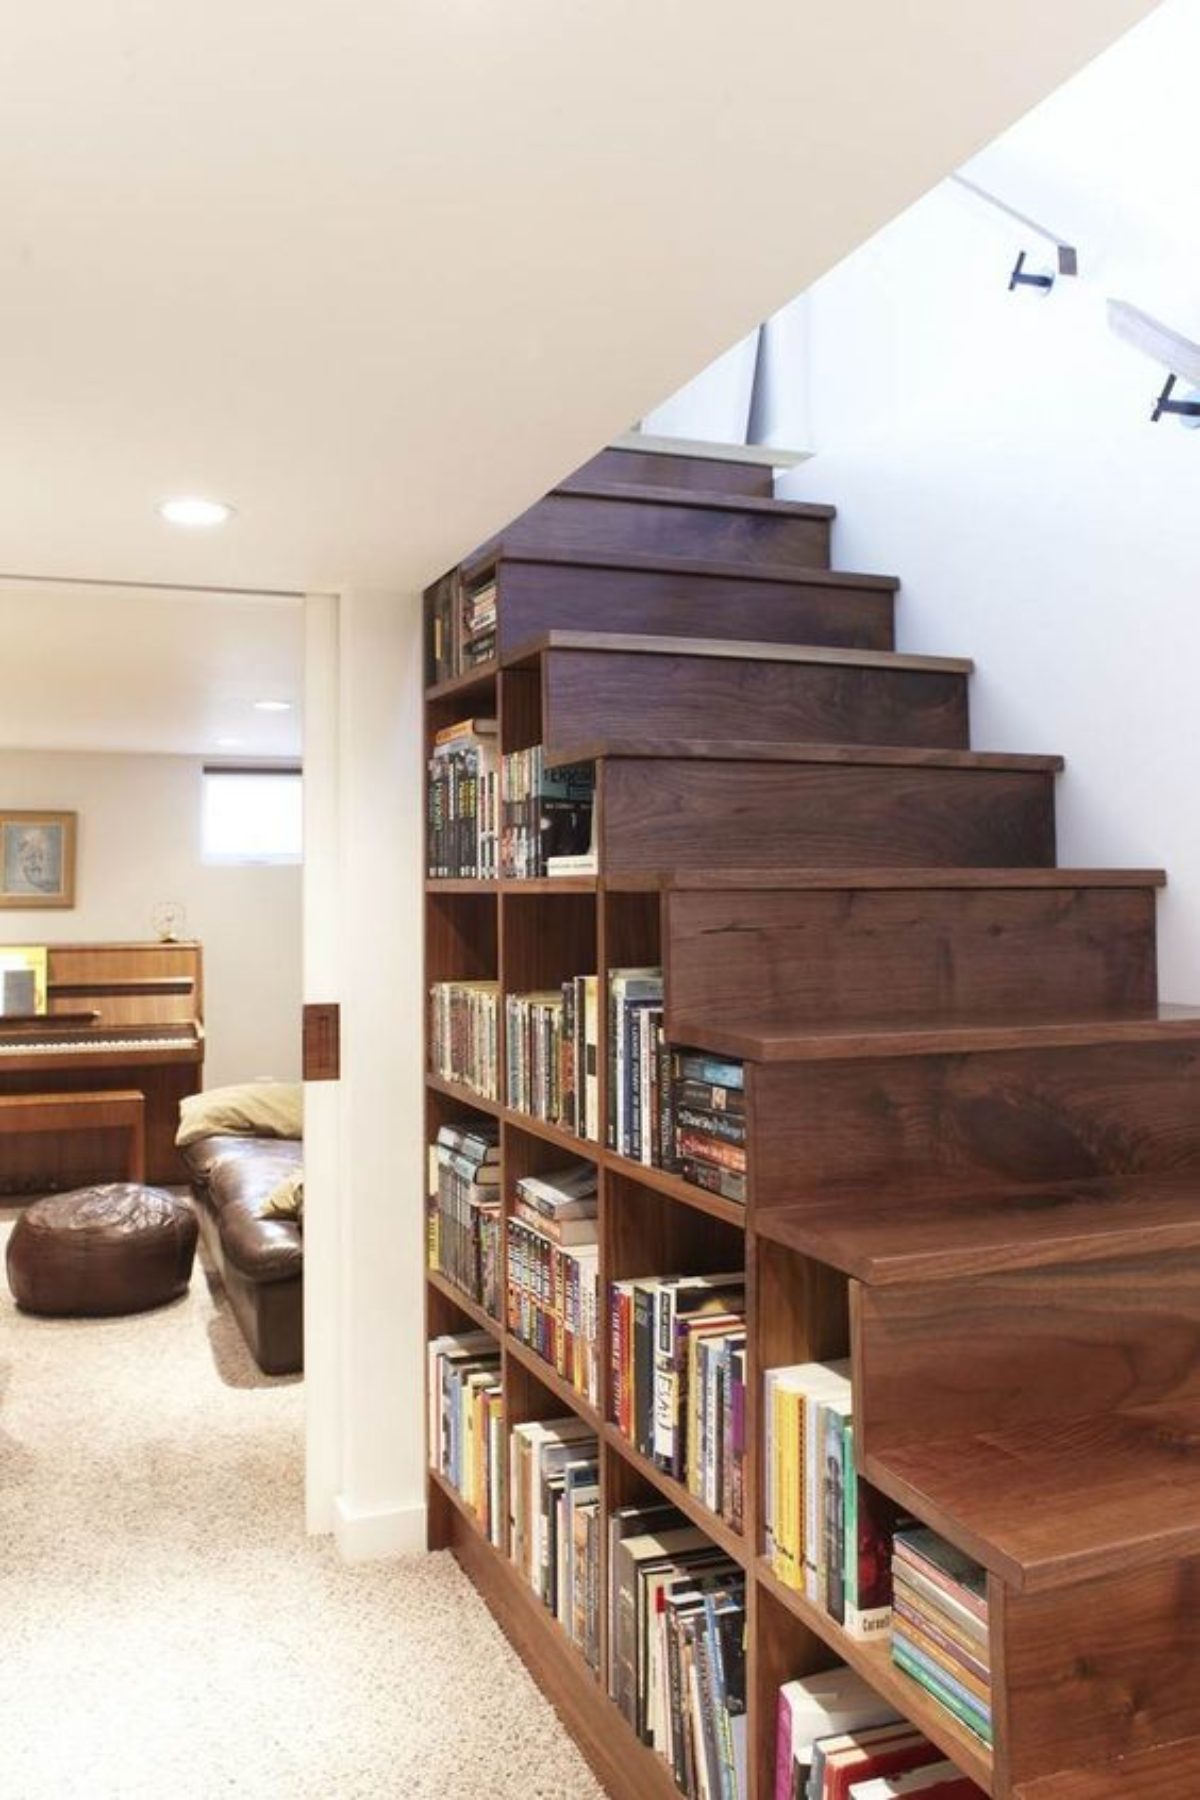 Espace sous l'escalier : 30 idées pour optimiser cet espace !